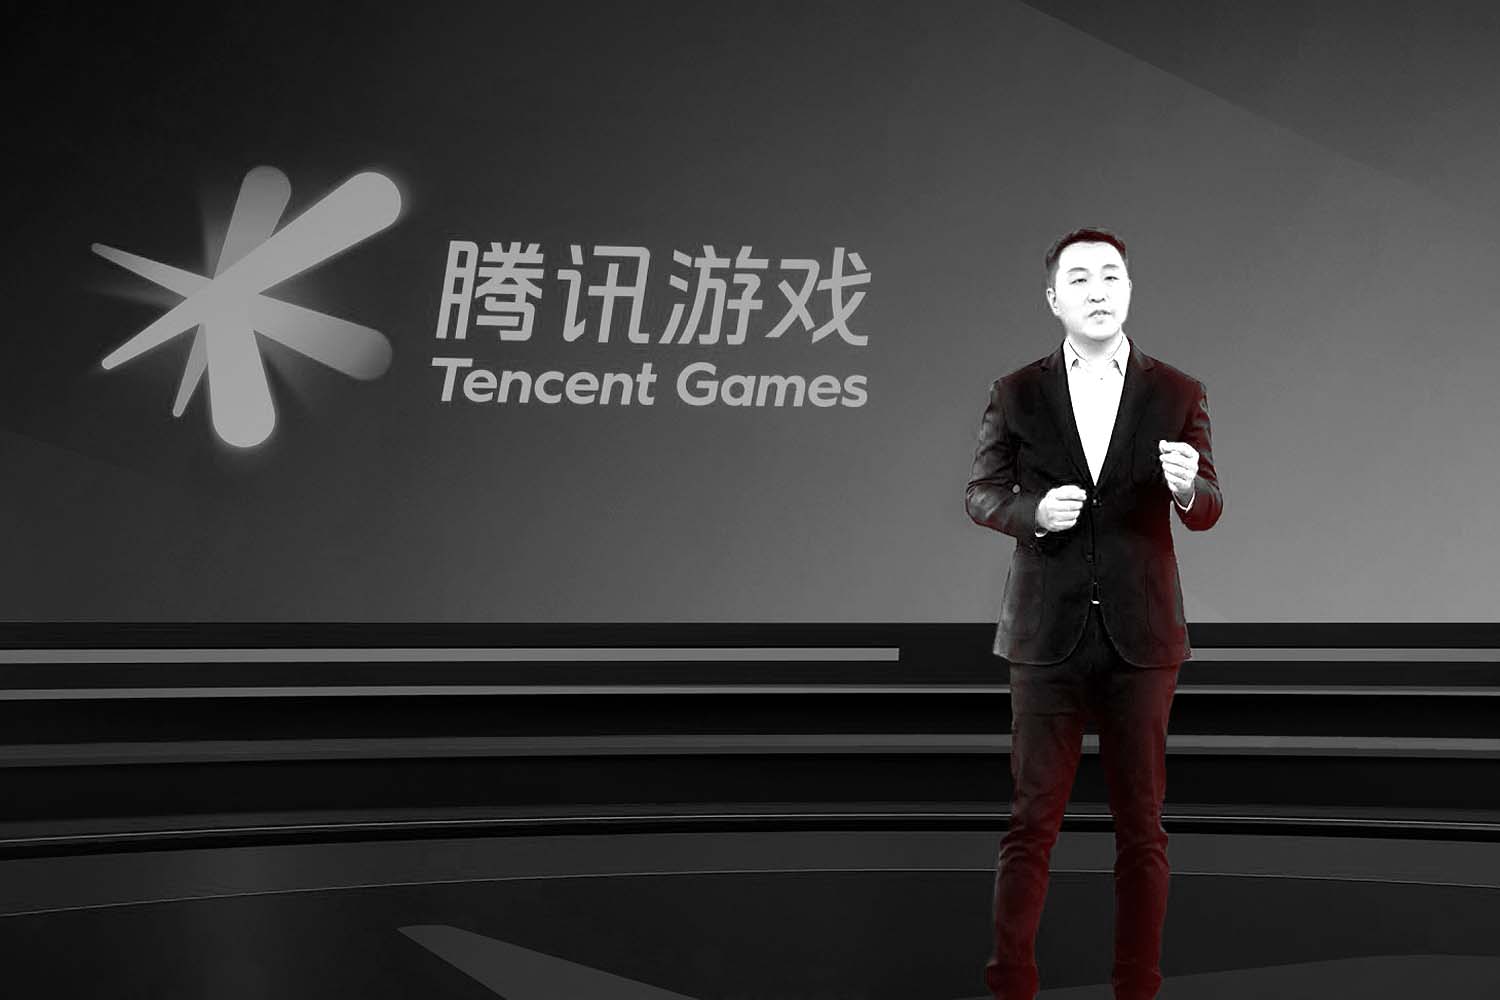 tencent_logo_behind_man